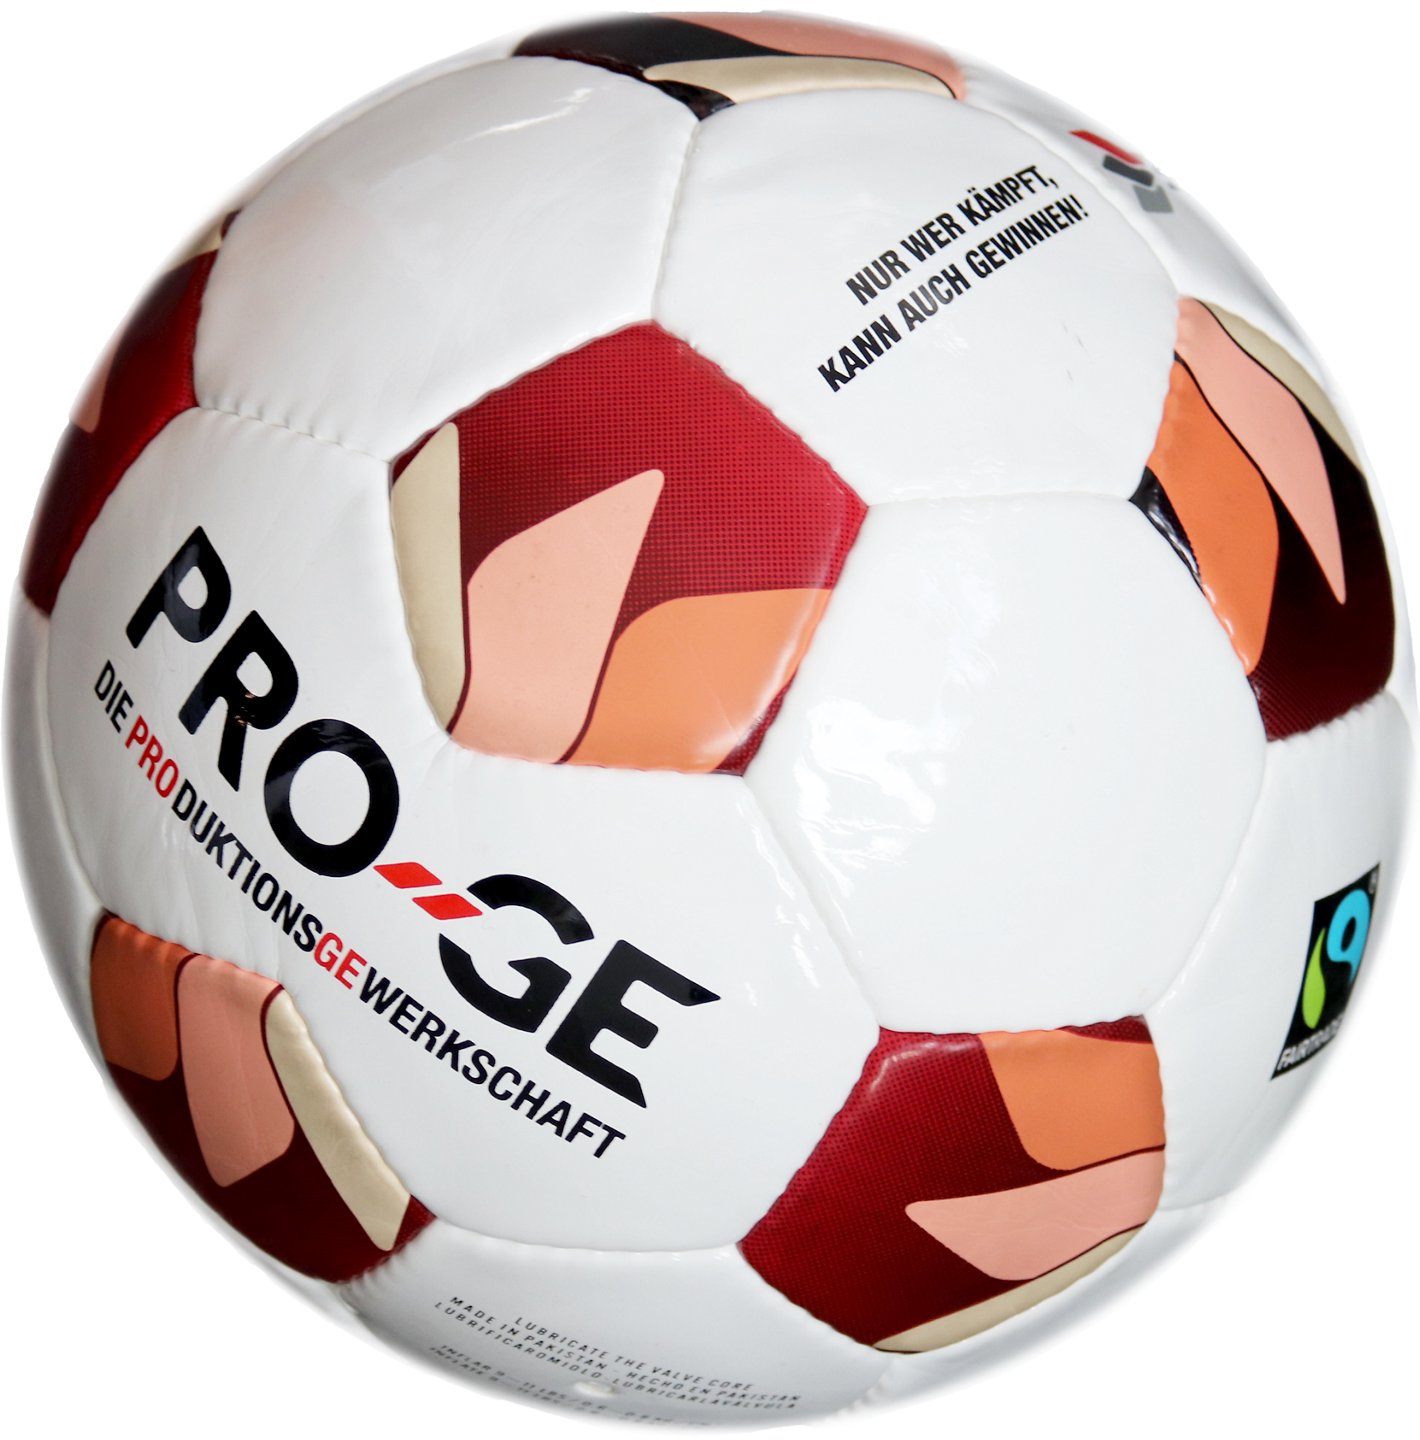 Fußball im PRO-GE Design